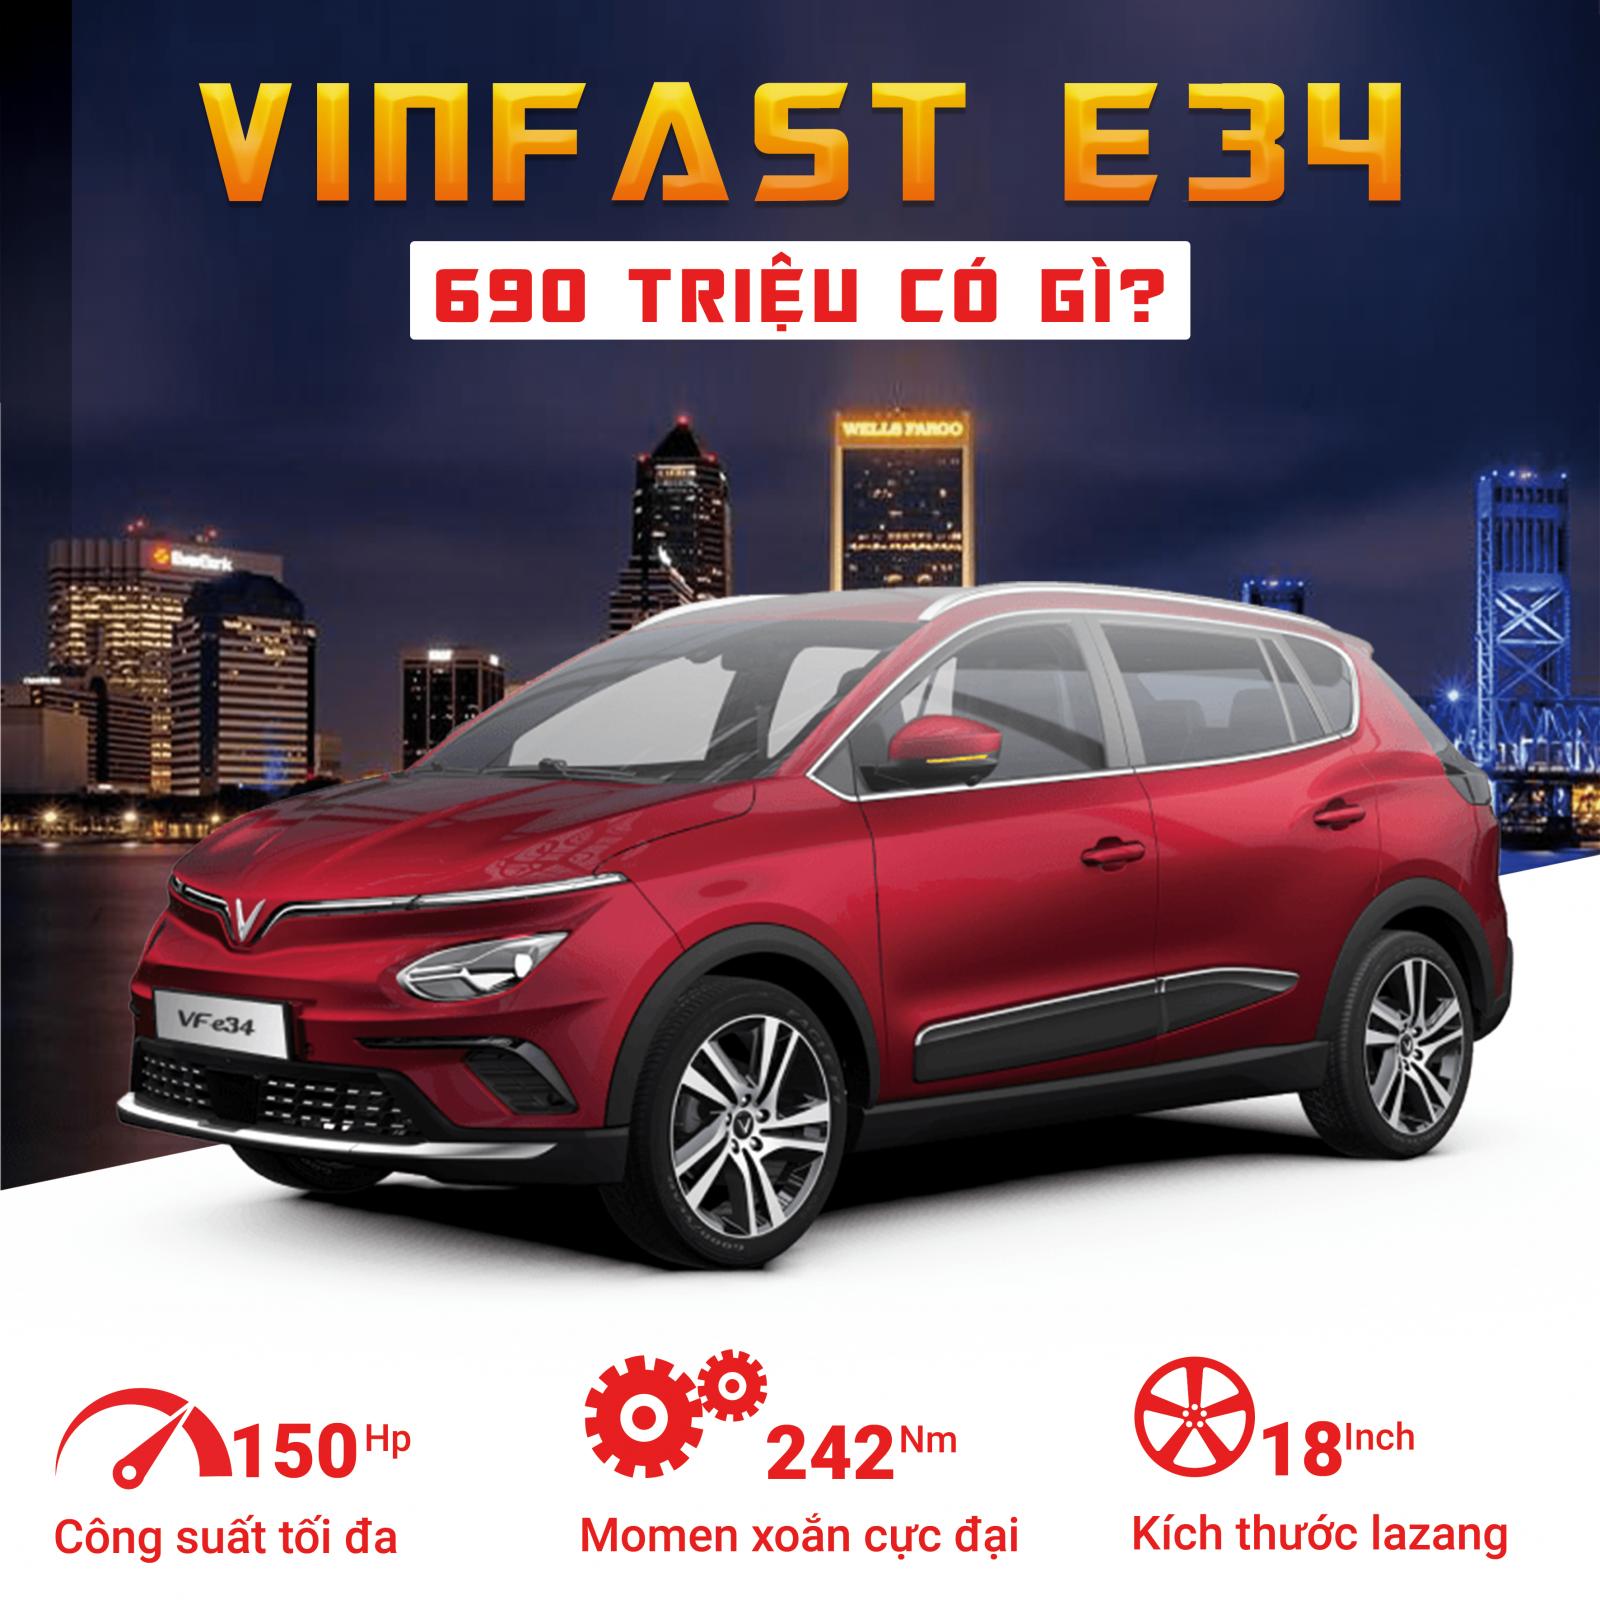 [Infographic] VinFast VF e34 có gì để cạnh tranh với đối thủ trong tầm giá 690 triệu đồng? a1